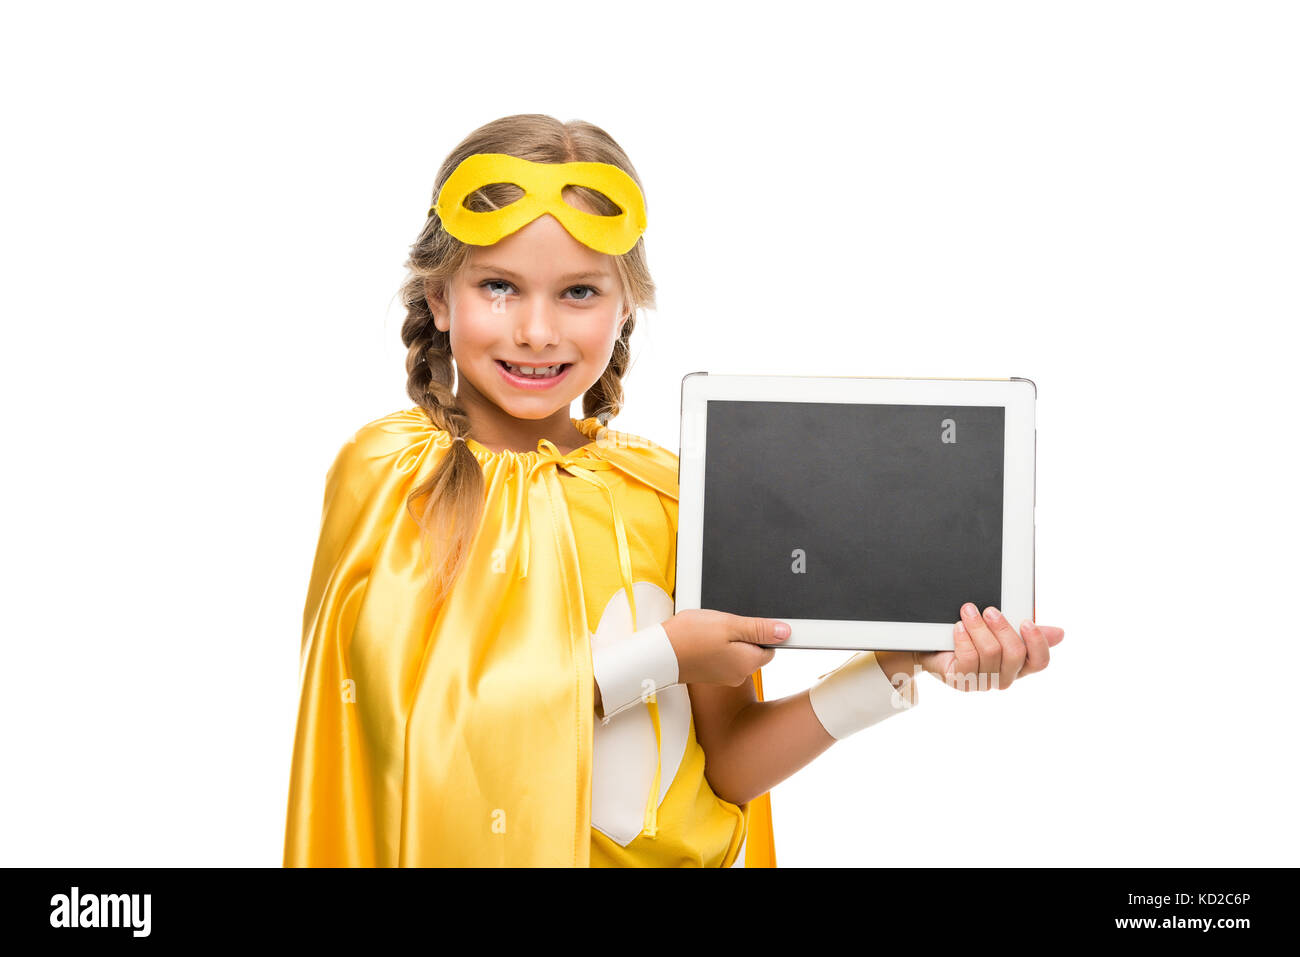 Supergirl with digital tablet Banque D'Images